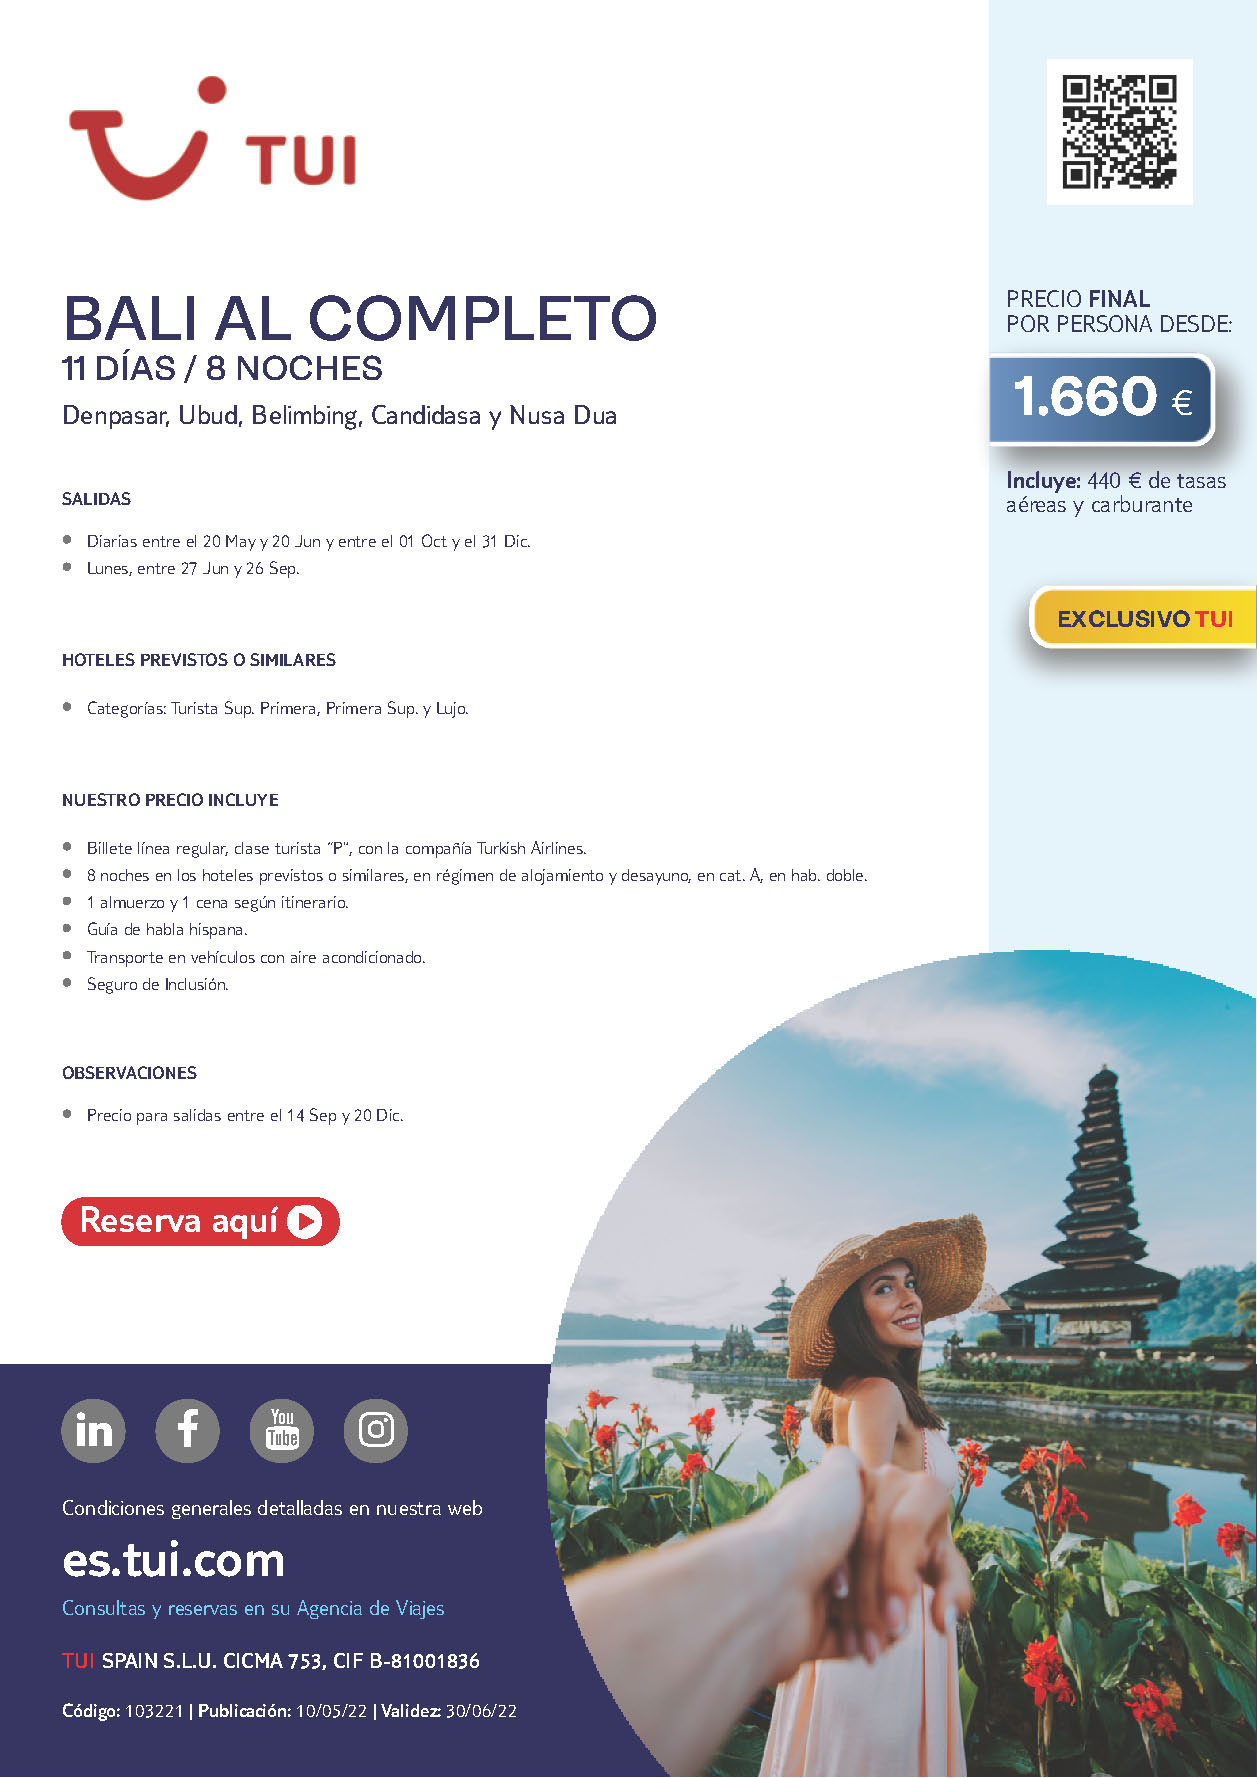 Oferta TUI Bali al Completo 11 dias salidas de Mayo a Diciembre 2022 desde Madrid Barcelona Bilbao Valencia vuelos Turkish Airlines